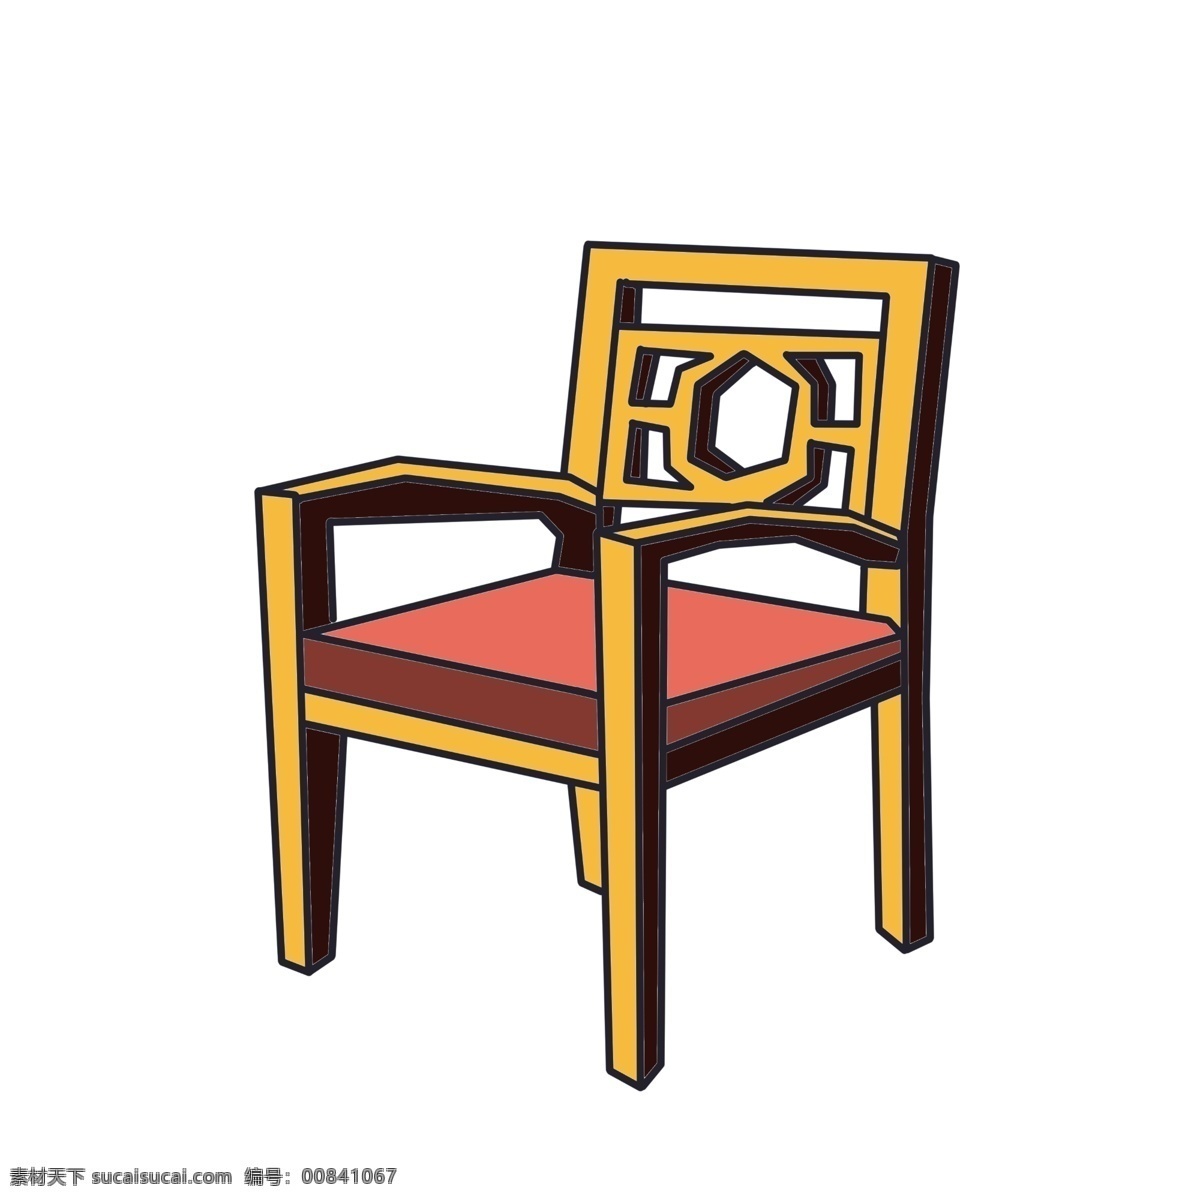 家具 椅子 装饰 插画 家具椅子 黄色的椅子 漂亮的椅子 创意椅子 立体椅子 精美椅子 卡通椅子